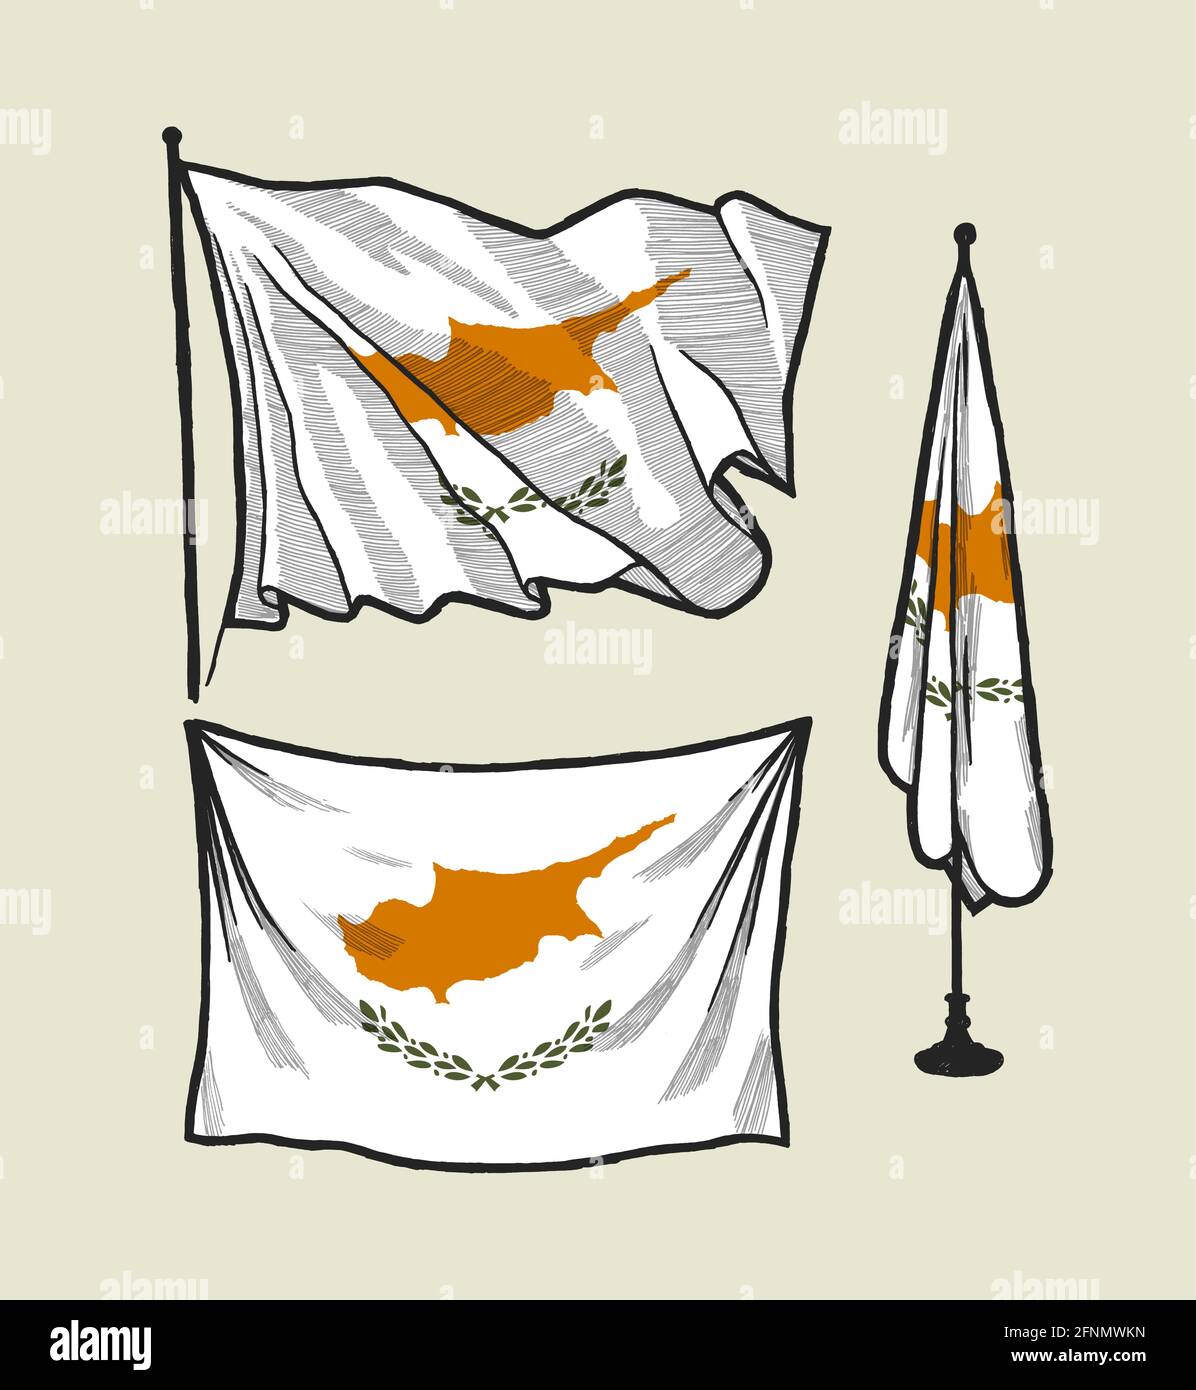 Bandiera di Cipro sul disegno del vento. Bandiera di Cipro appesa al muro - immagine vettoriale in stile vintage Illustrazione Vettoriale